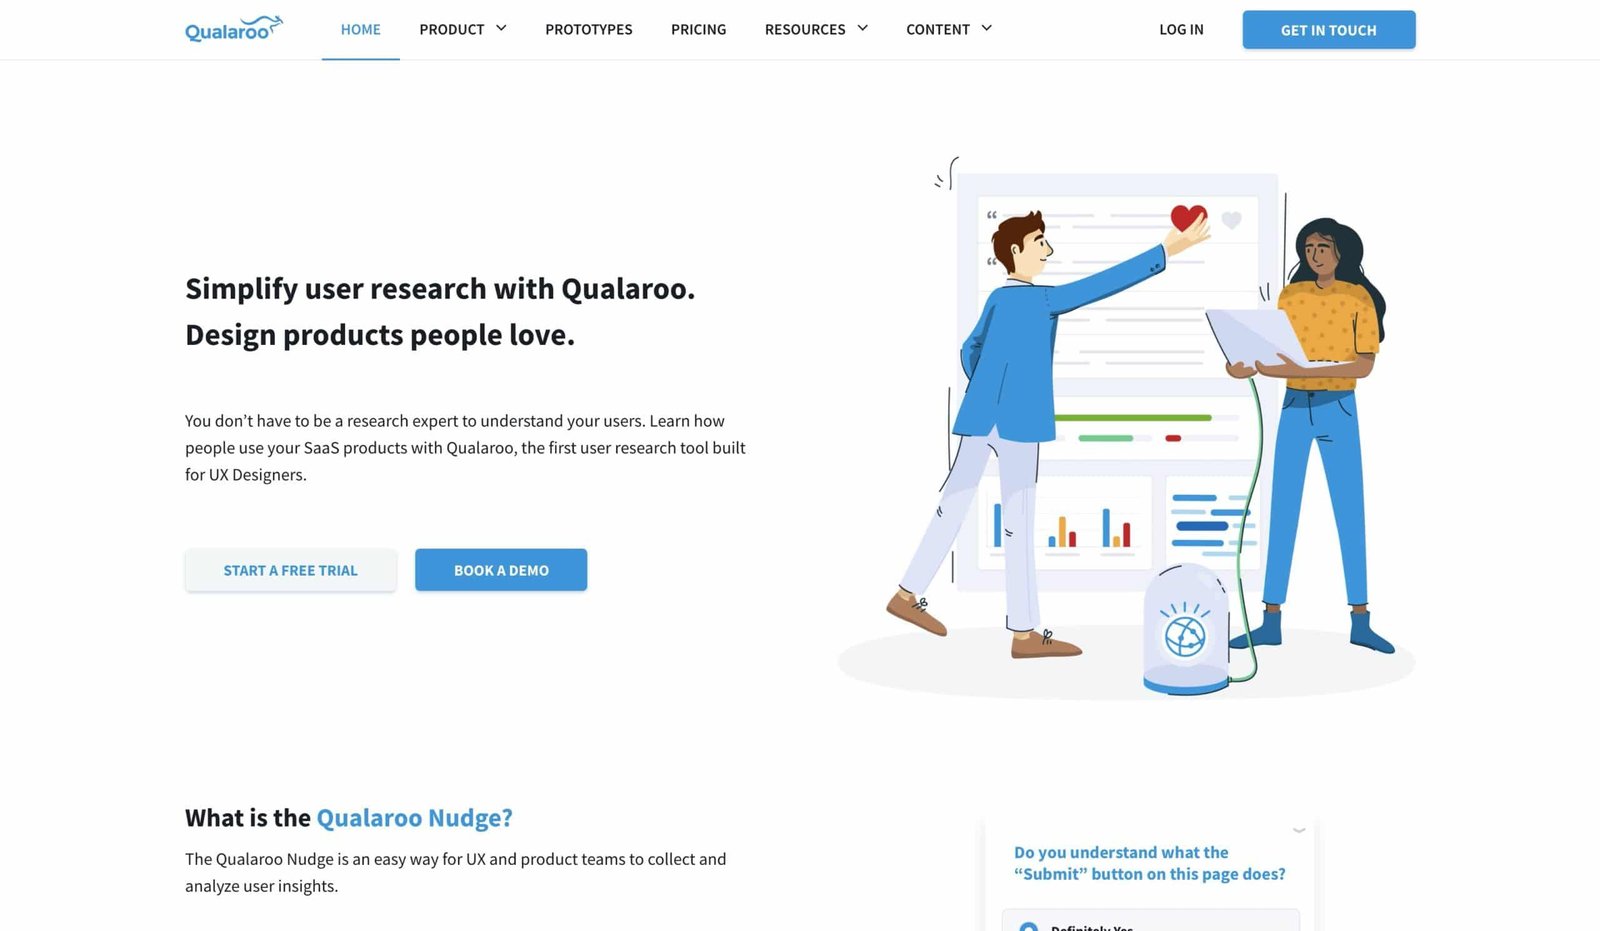 Qualaroo Website - Best SaaS Tools for Digital Marketers